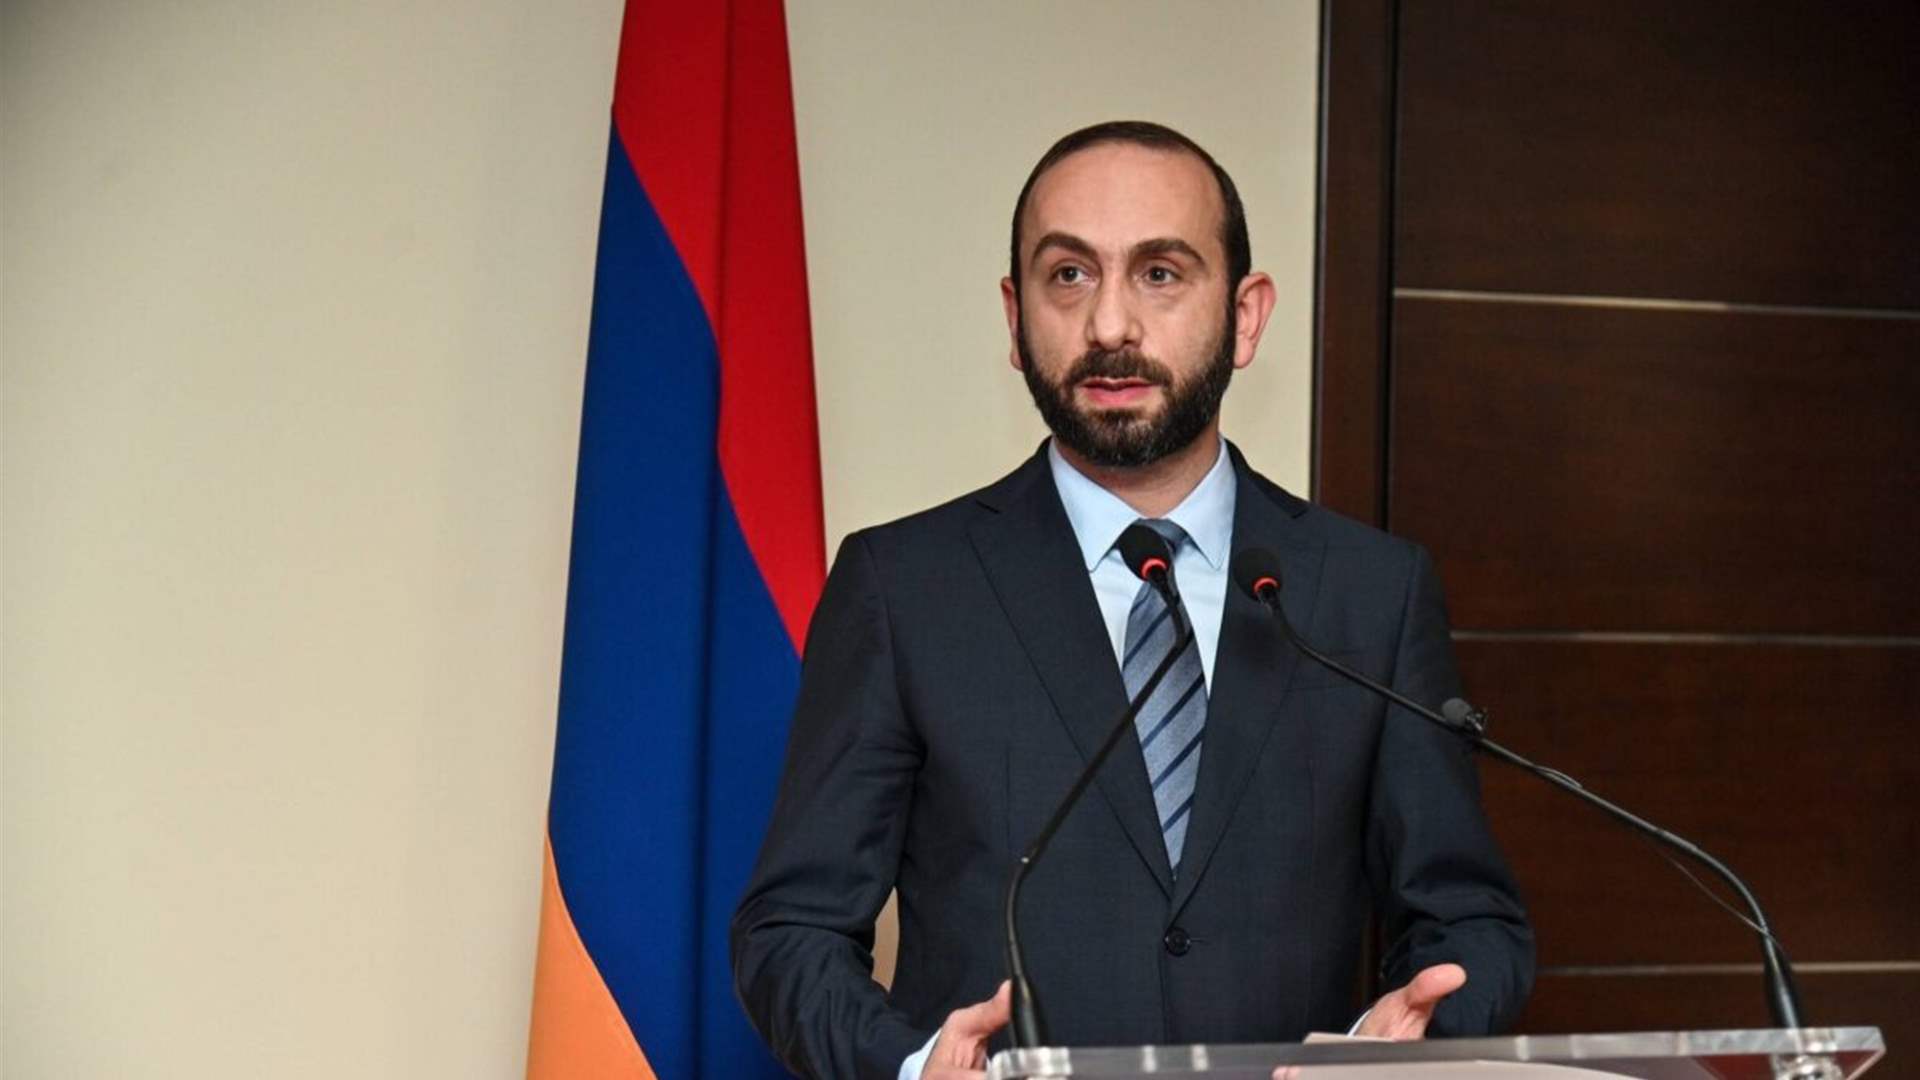 Armenia considers seeking EU membership